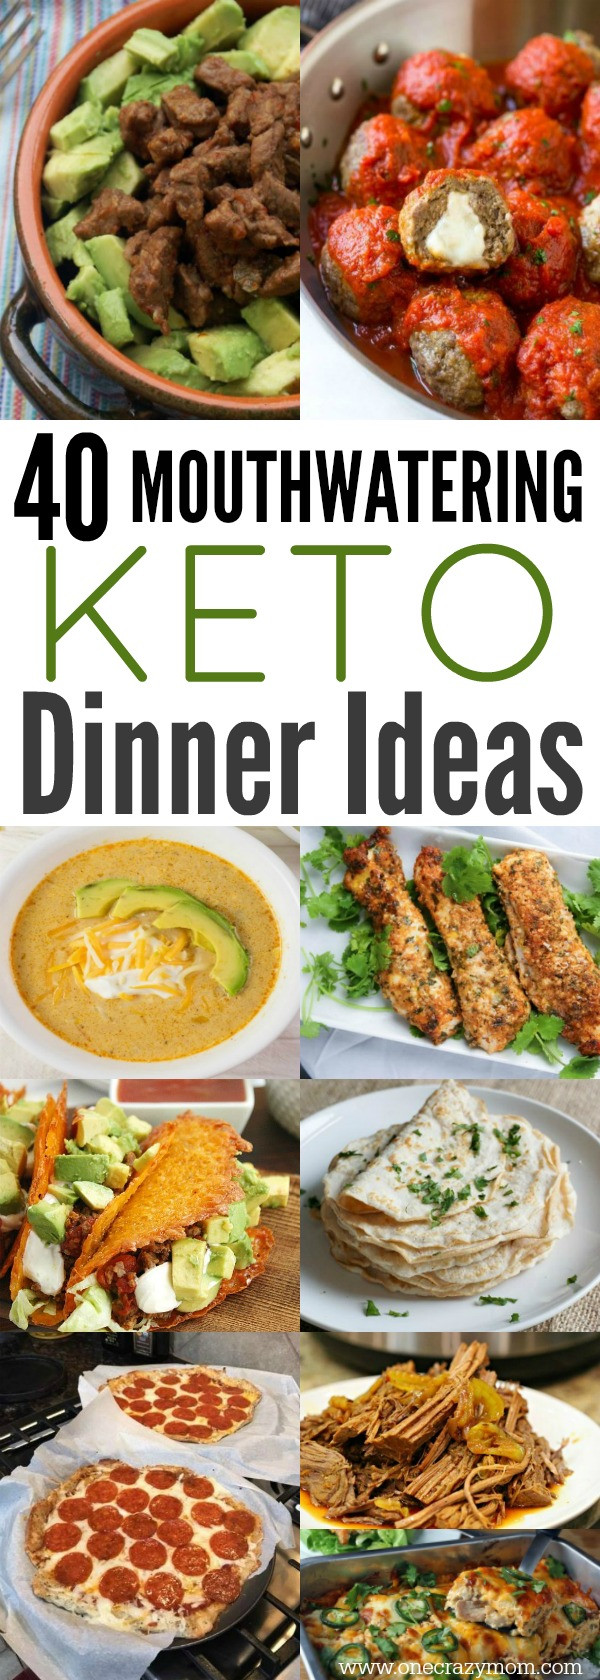 Keto Dinner Recipes Easy
 Easy Keto Dinner Ideas 40 Easy Keto Dinner Recipes